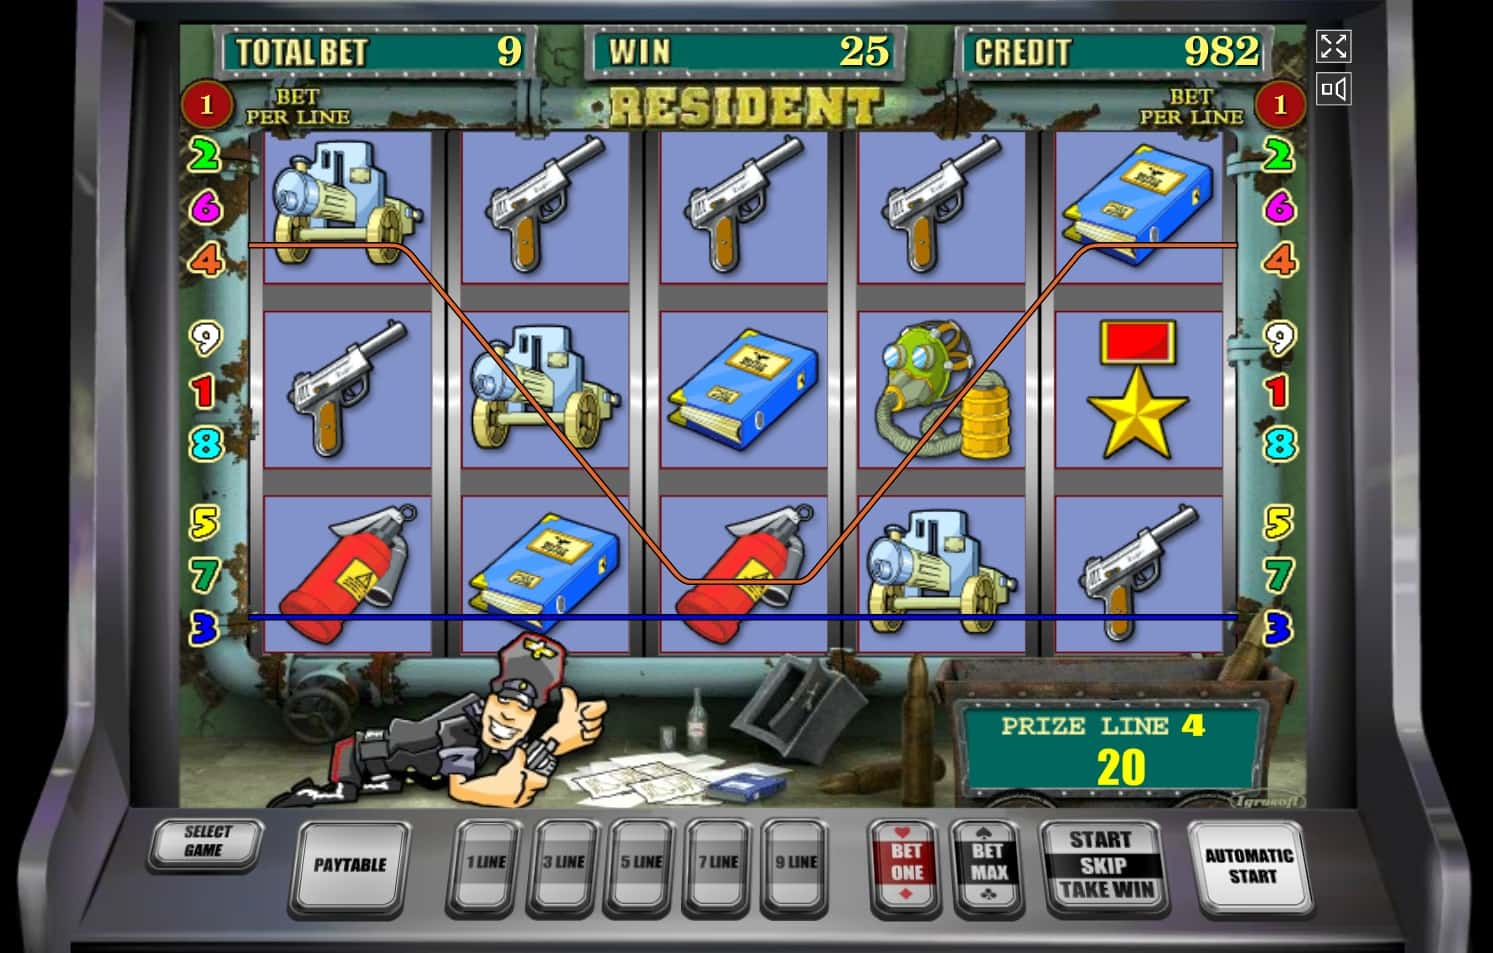 ResidentИгровой автомат Resident от Igrosoft играть онлайн на.